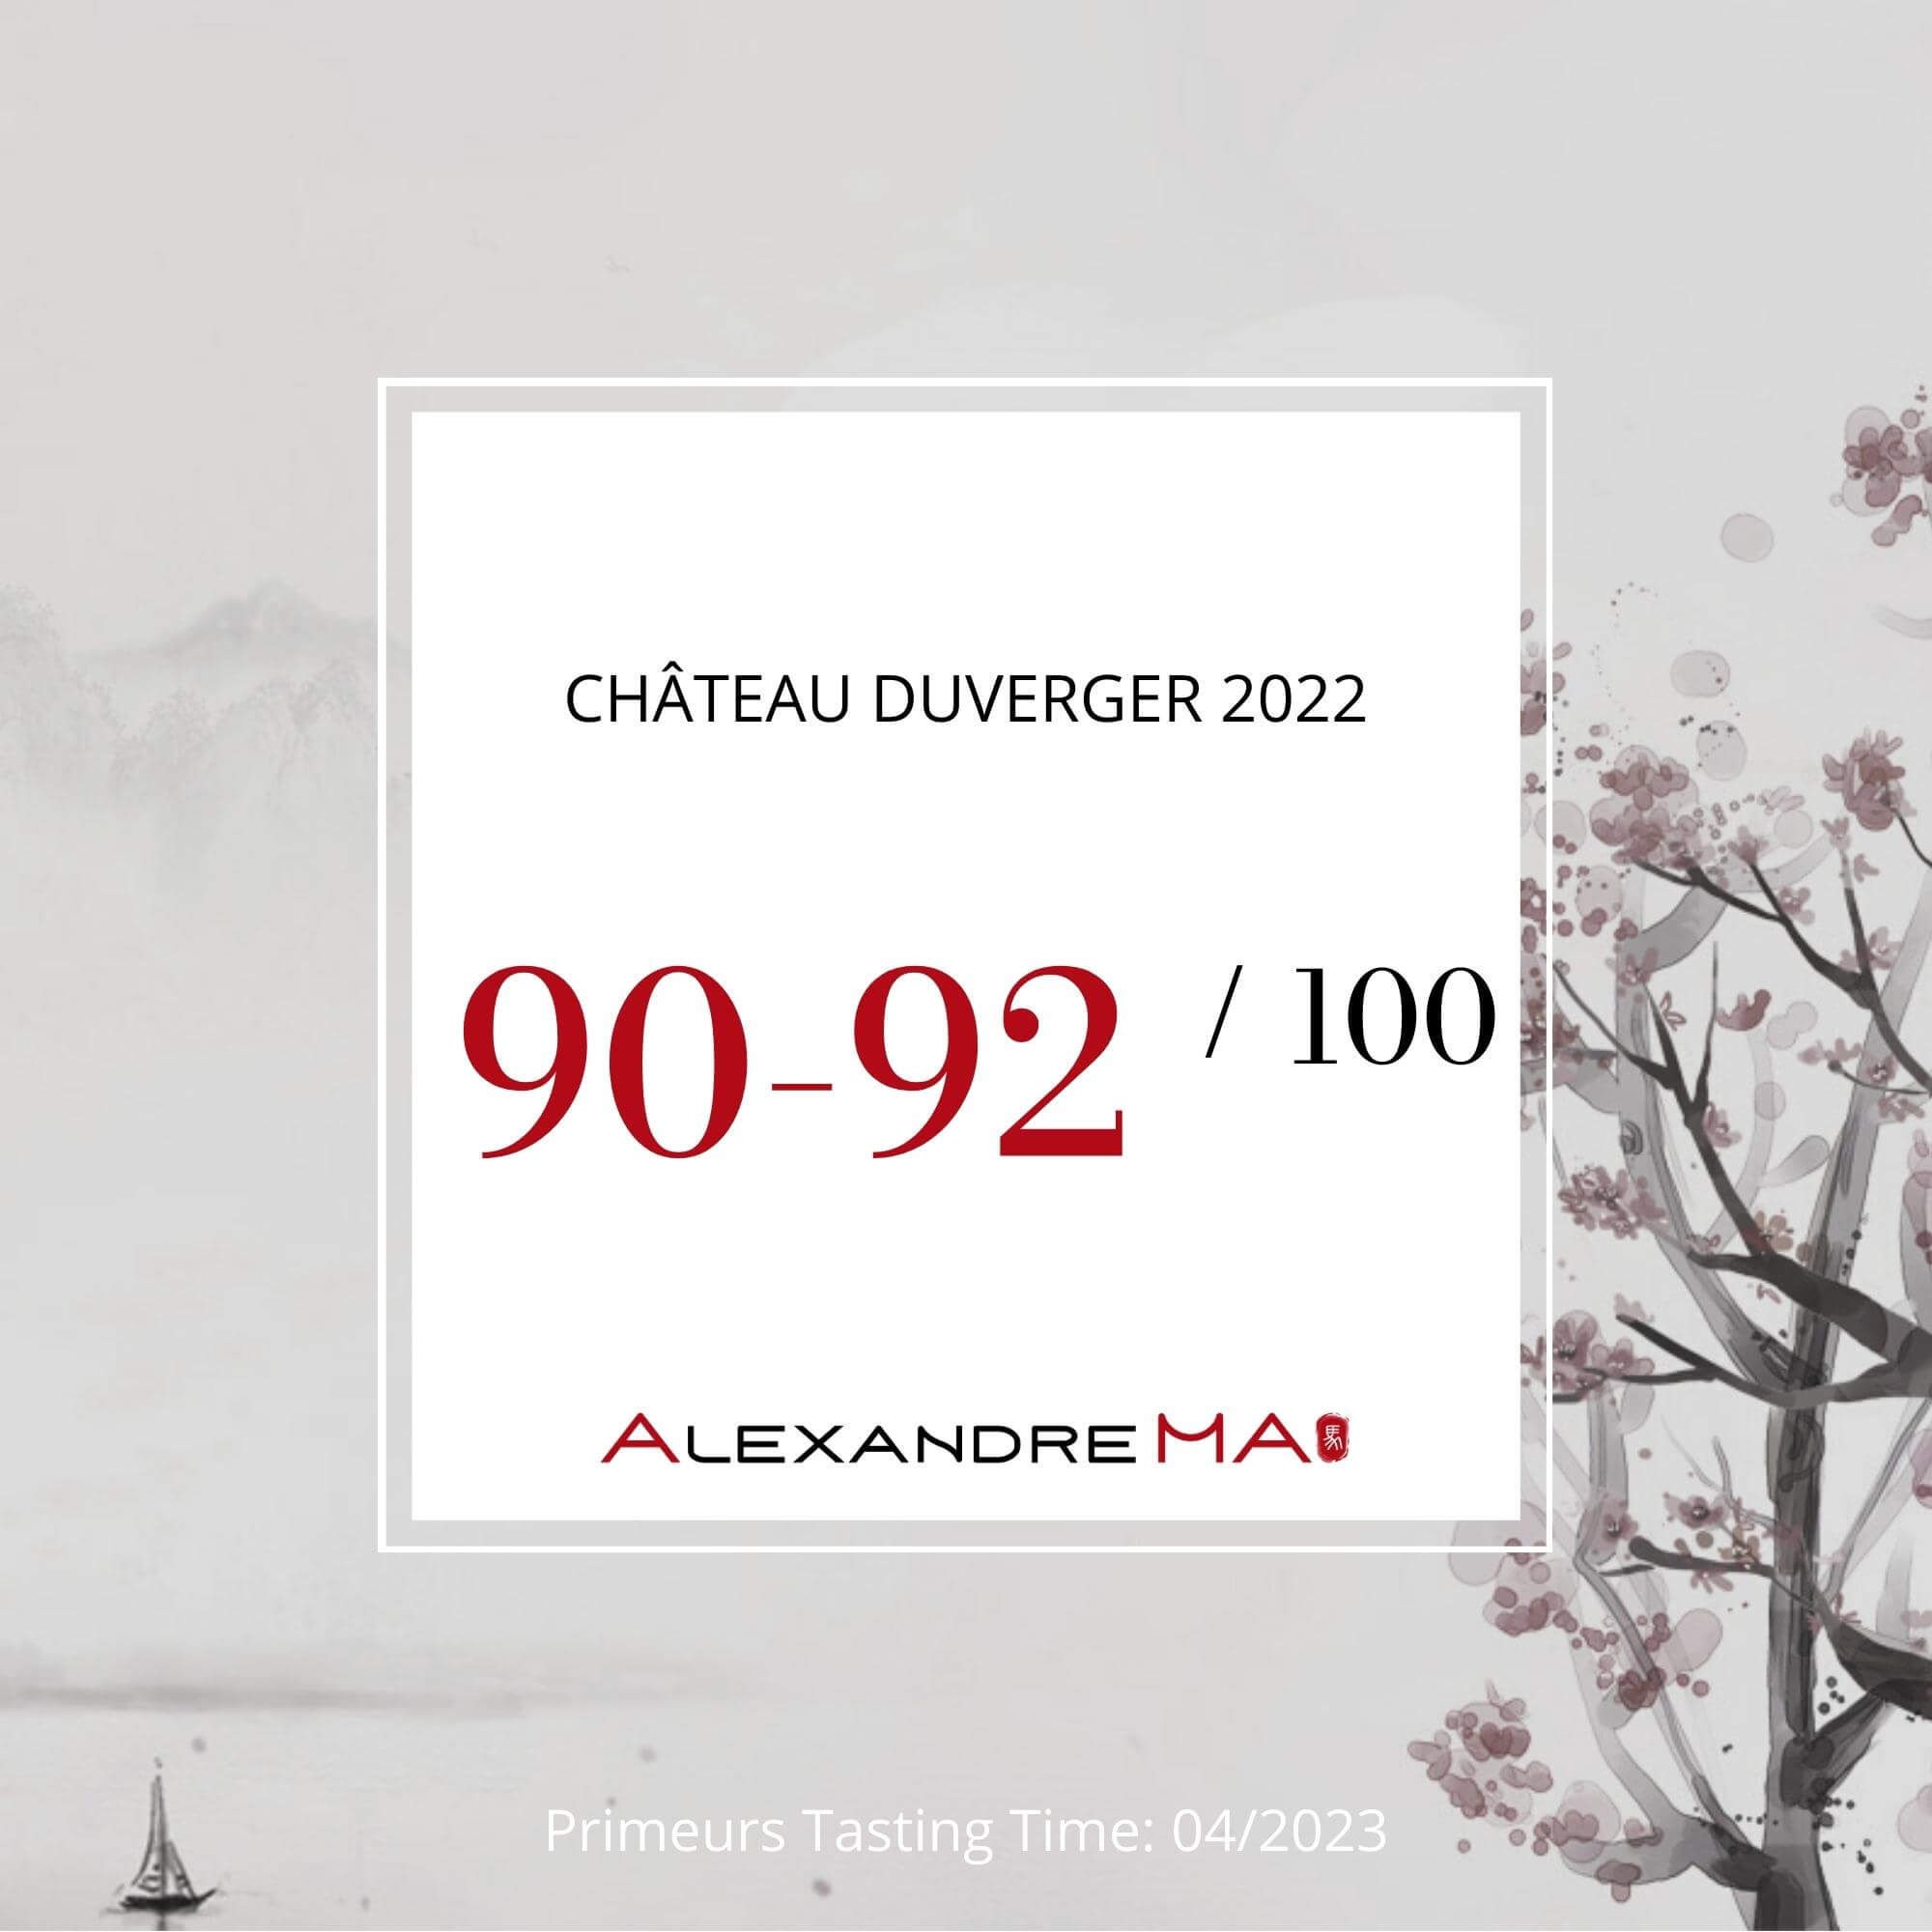 Château Duverger 2022 Primeurs - Alexandre MA